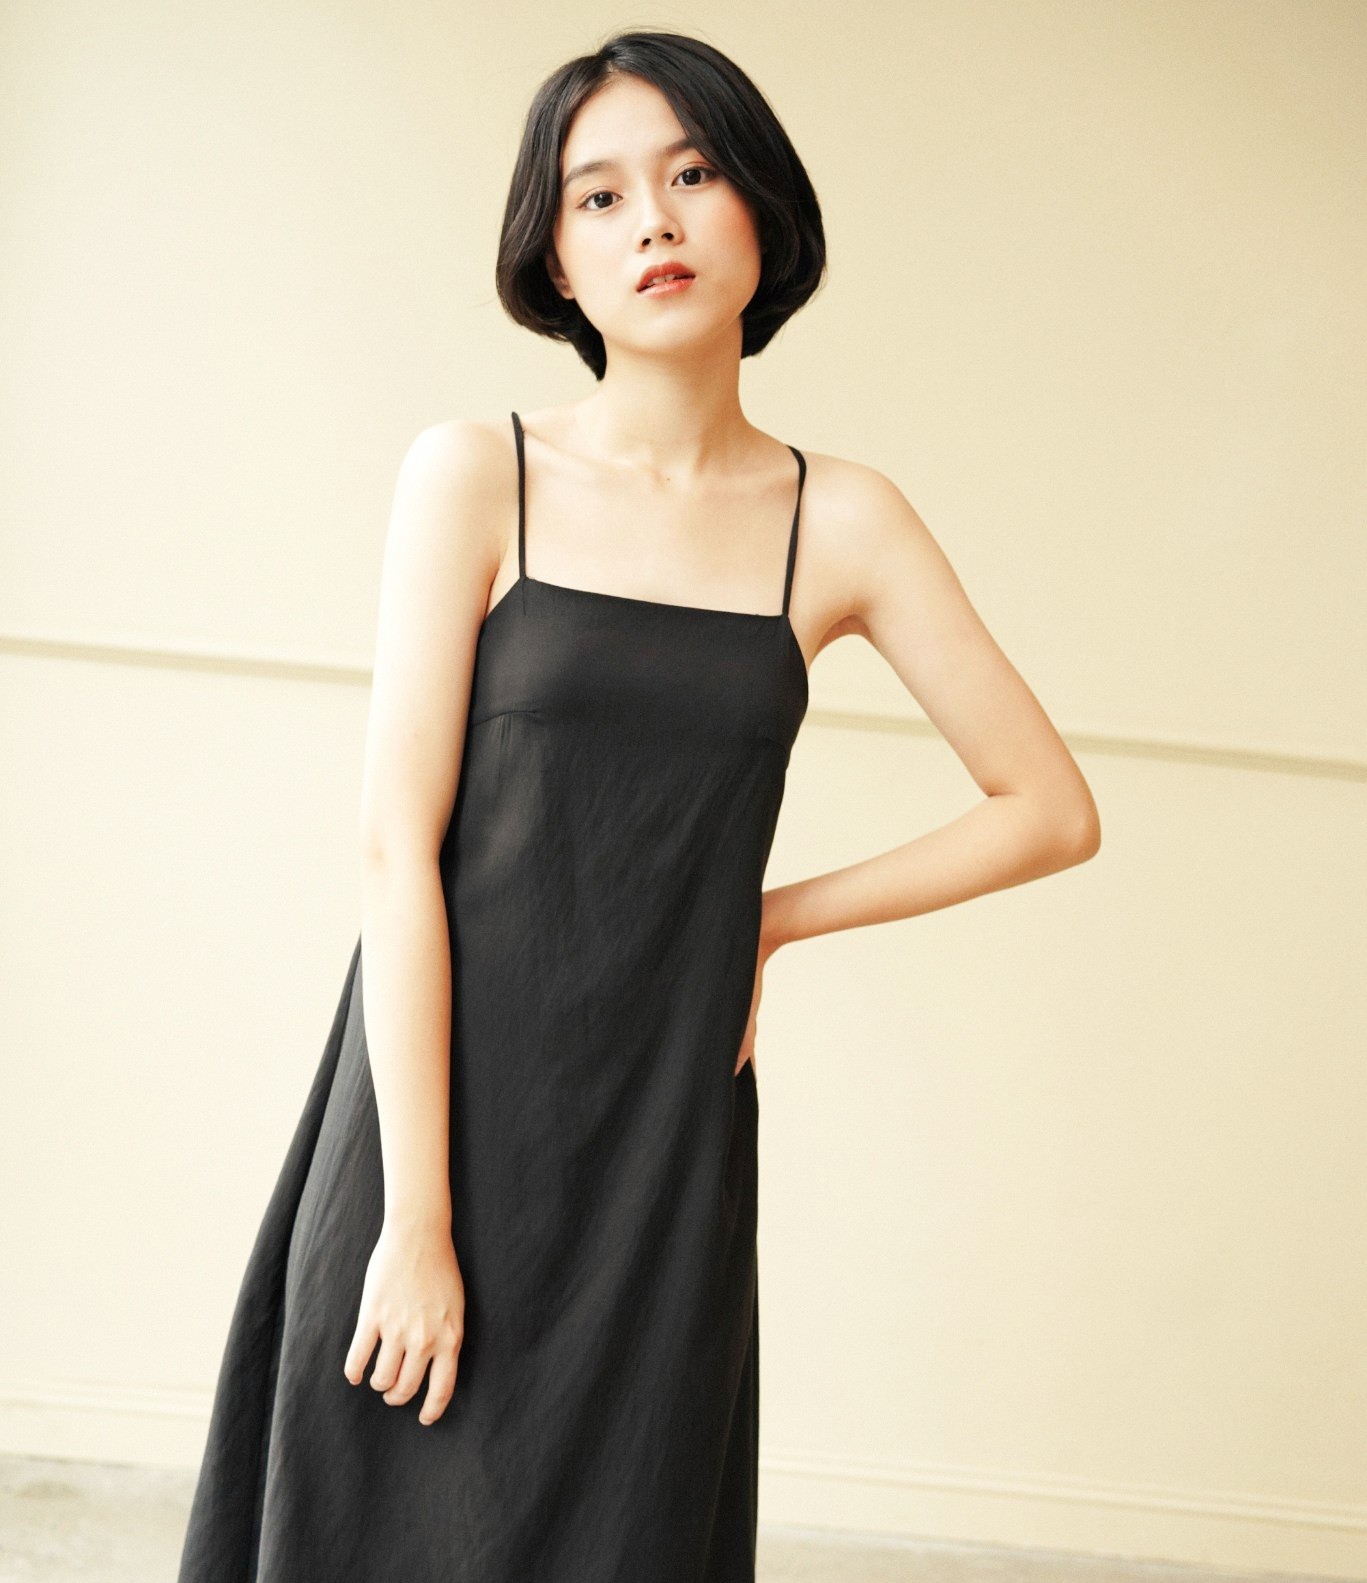 Thiết kế đầm đen tối giản cho thời trang thường ngày